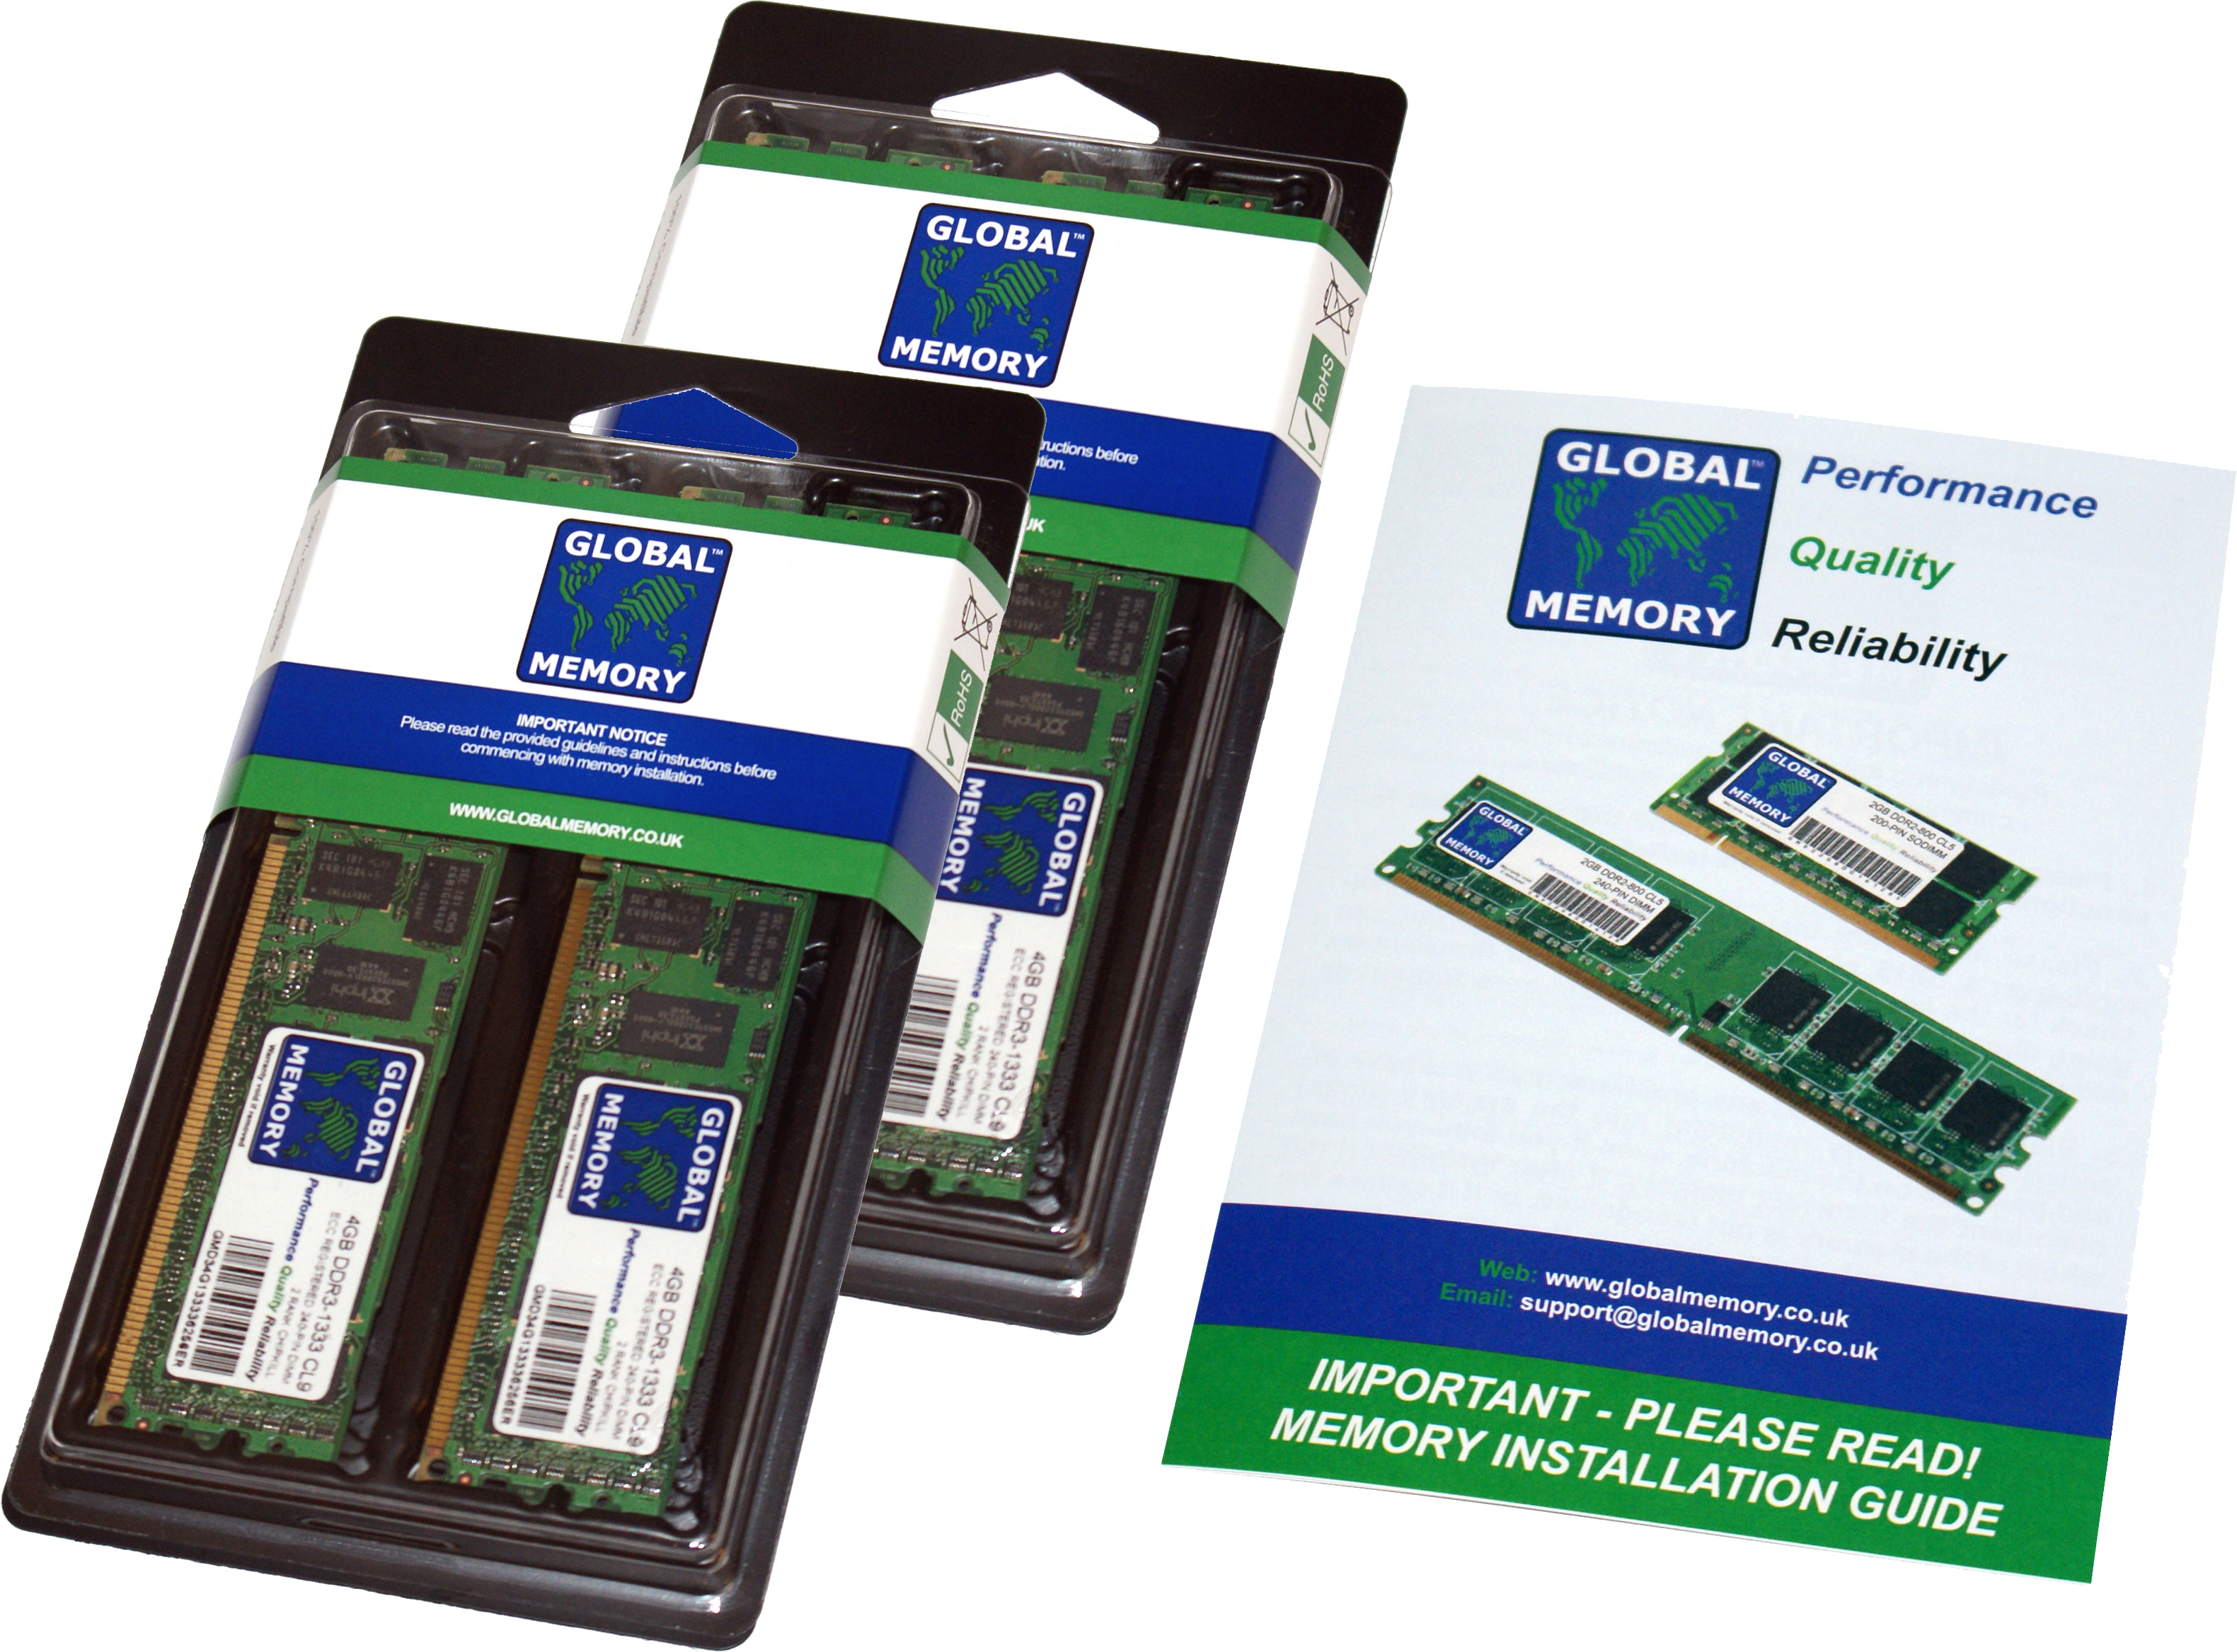 256GB (4 x 64GB) DDR4 2933MHz PC4-23400 288-PIN LOAD REDUCED ECC REGISTERED DIMM (LRDIMM) MEMORY RAM KIT FOR FUJITSU SERVERS/WORKSTATIONS (16 RANK KIT CHIPKILL)